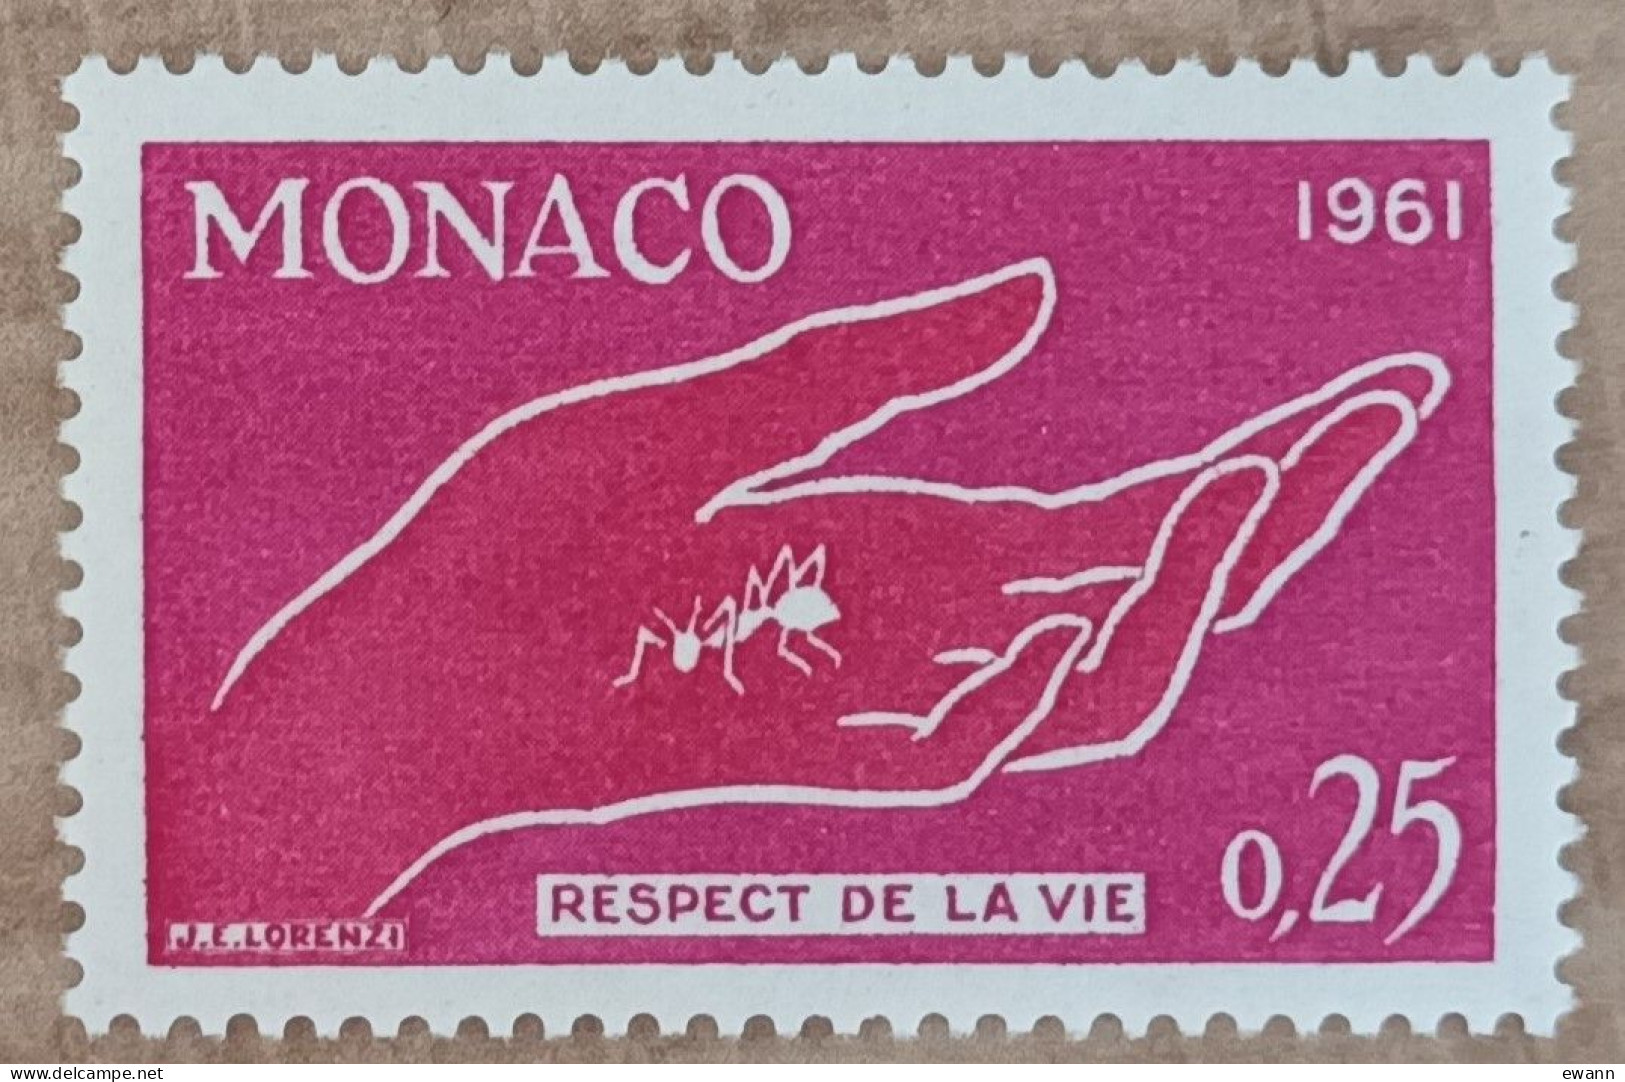 Monaco - YT N°554 - Campagne Pour Le Respect De La Vie Animale - 1961 - Neuf - Ungebraucht